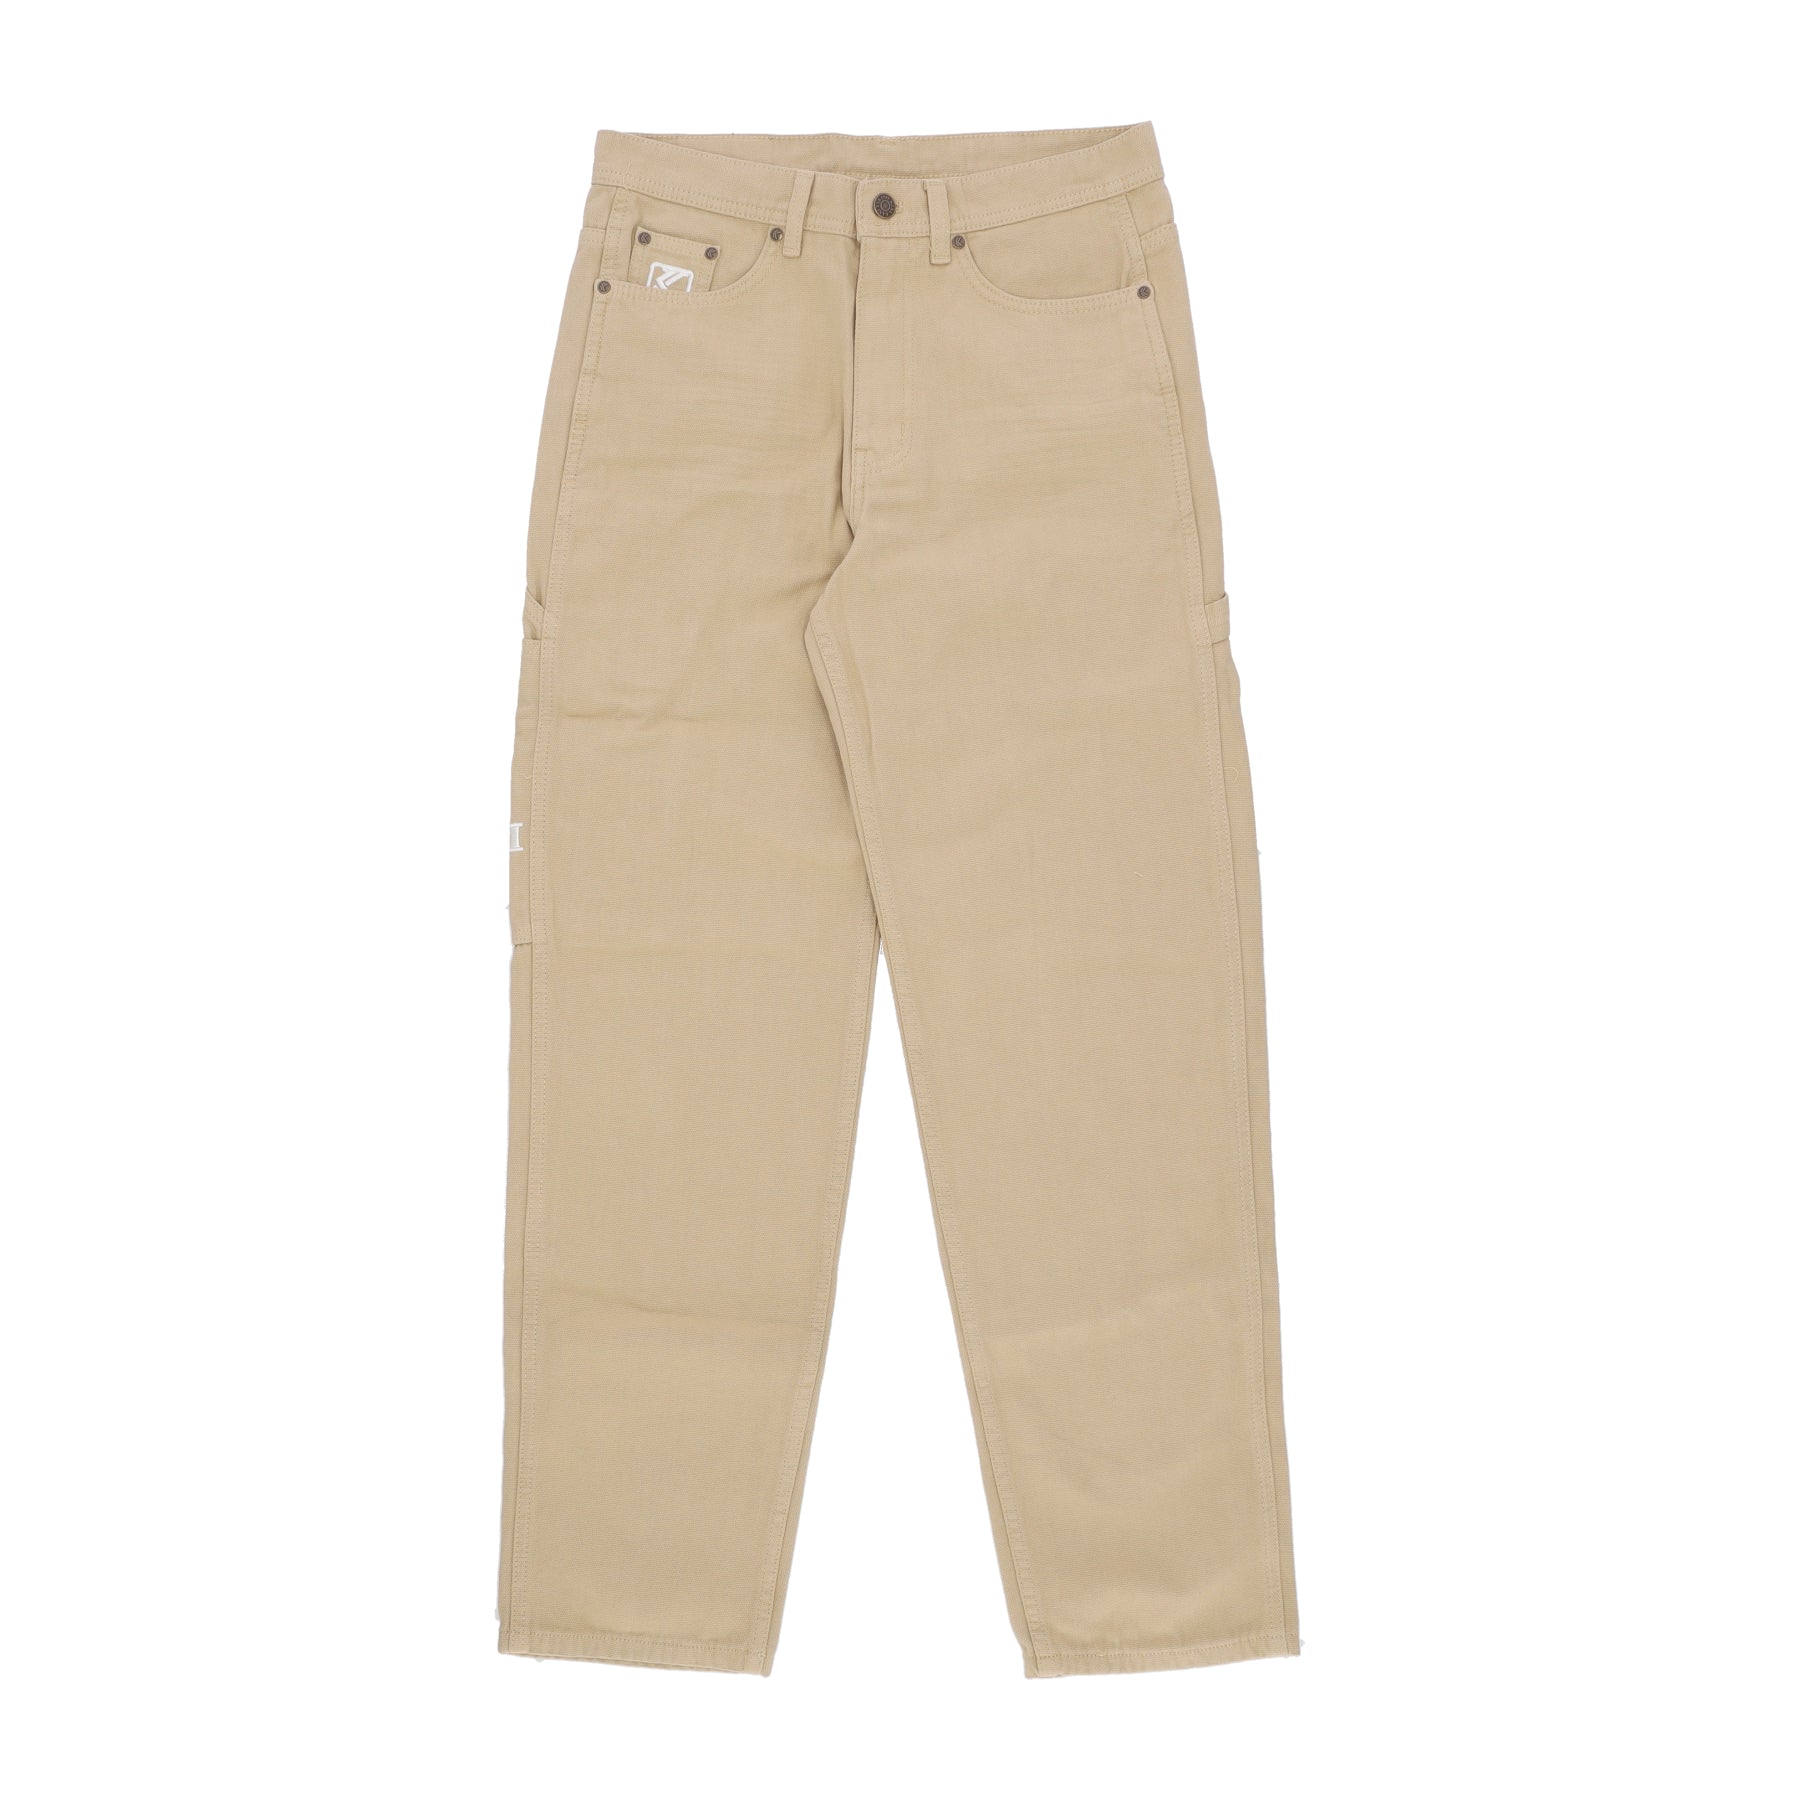 Pantalone Lungo Uomo Og Washed Baggy Workwear Pants Sand 6002650